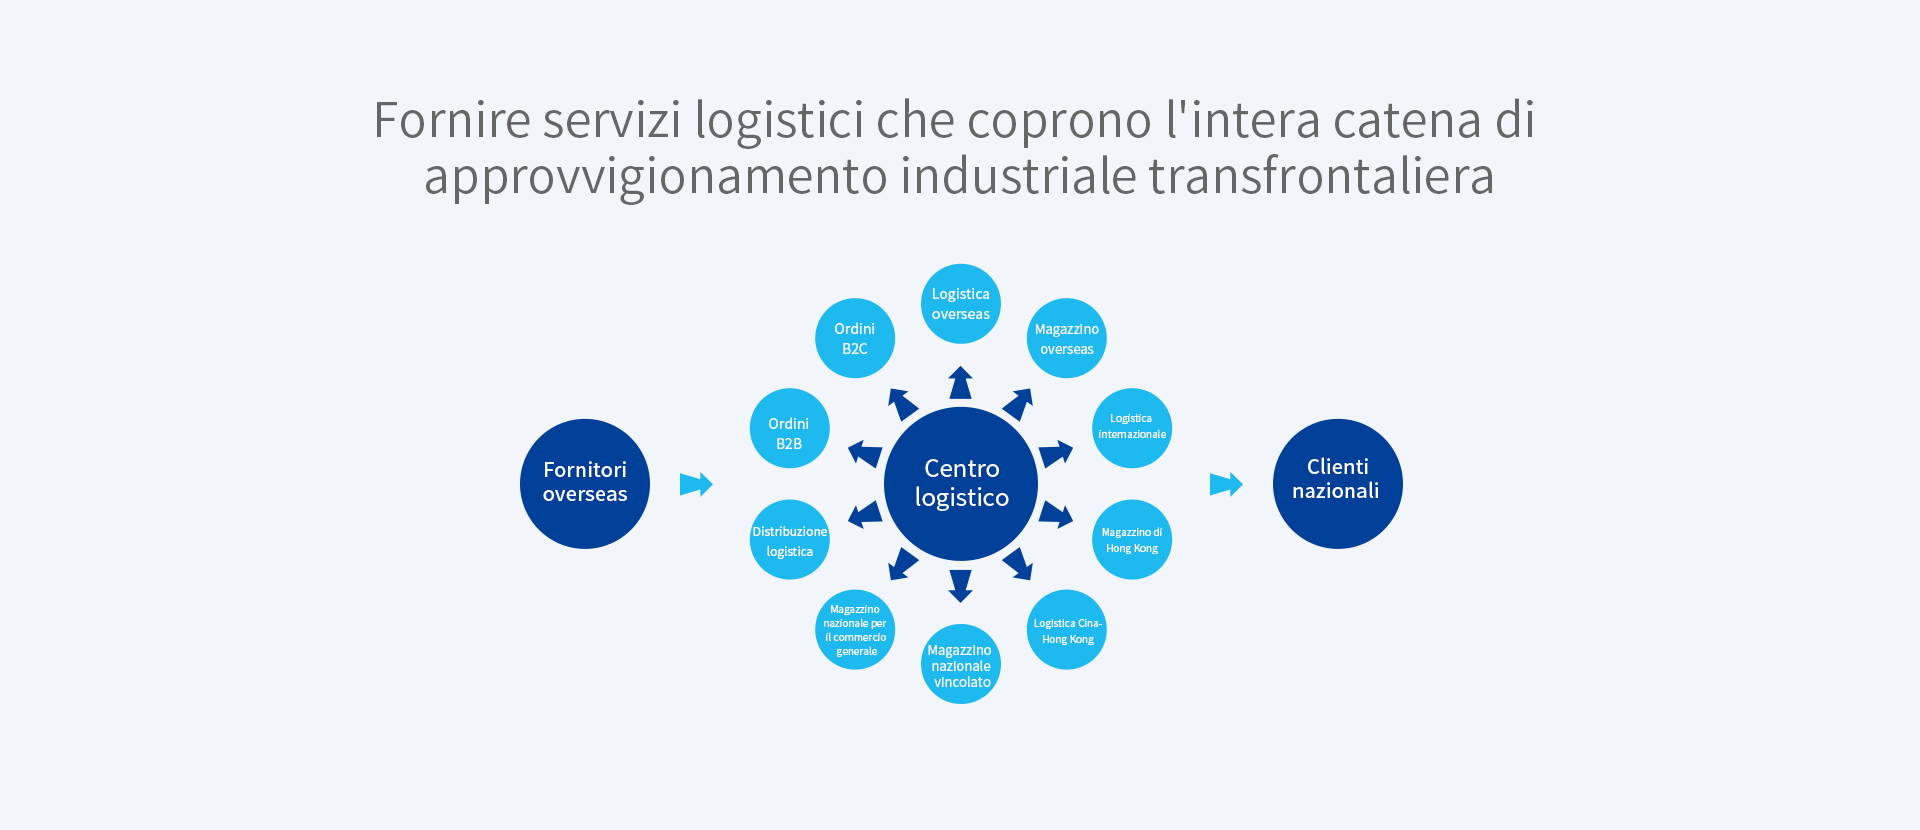 Fornire servizi logistici che coprano l'intera catena industriale transfrontaliera